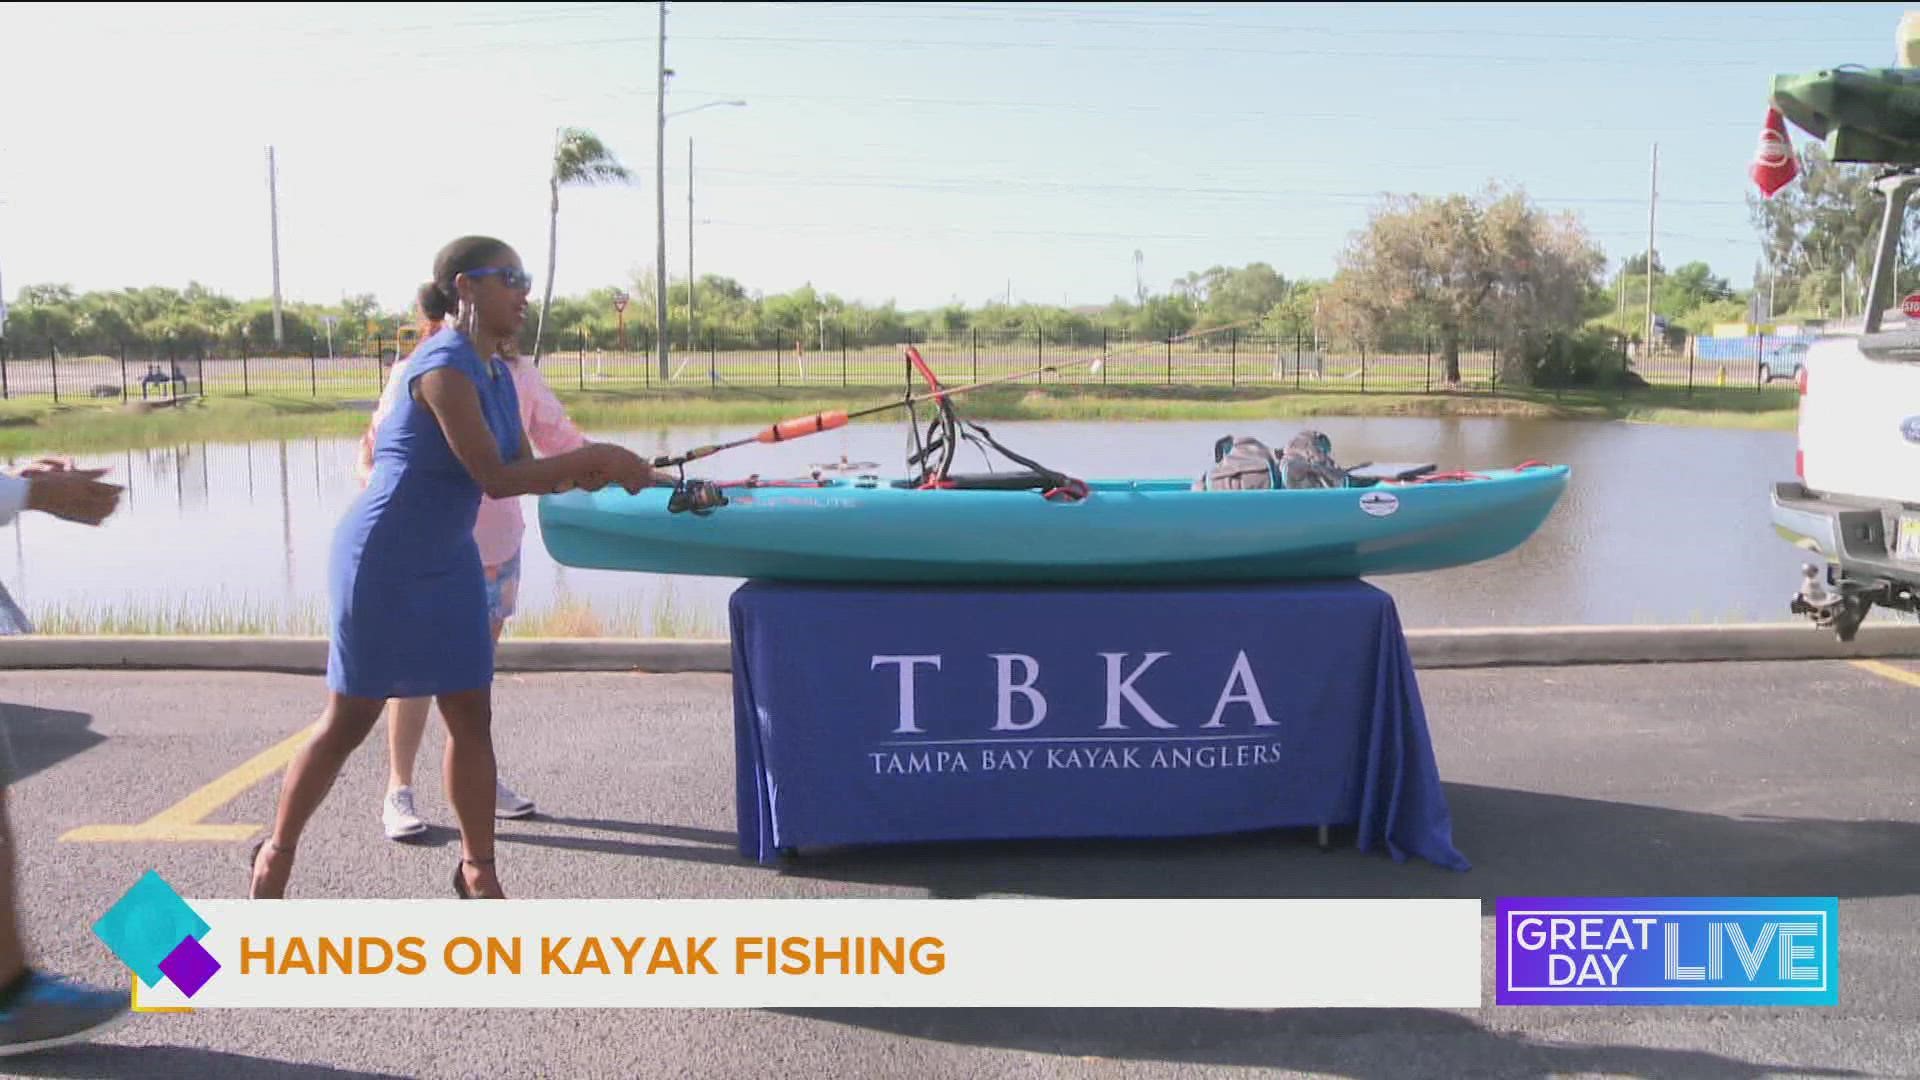 Tampa Bay Kayak Anglers is a 501c3 non-profit organization dedicated to promoting kayak fishing around Tampa Bay. For more information visit tampabaykayakanglers.org